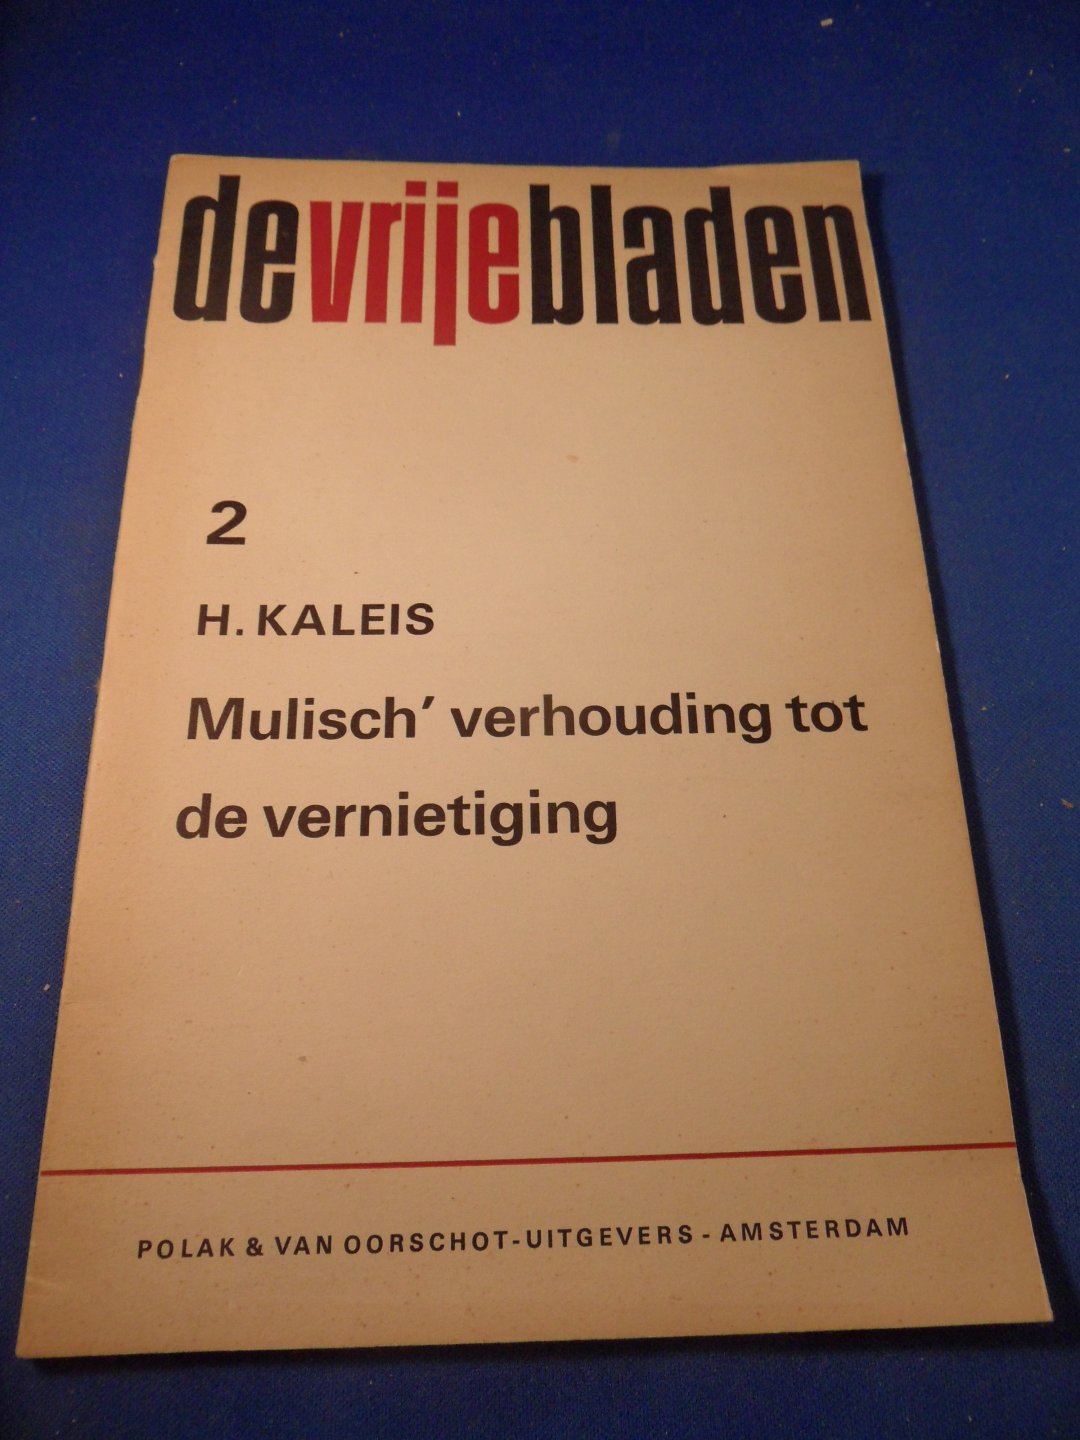 Kaleis, H. - Mulisch' verhouding tot de vernietiging. (De Vrije Bladen 2)